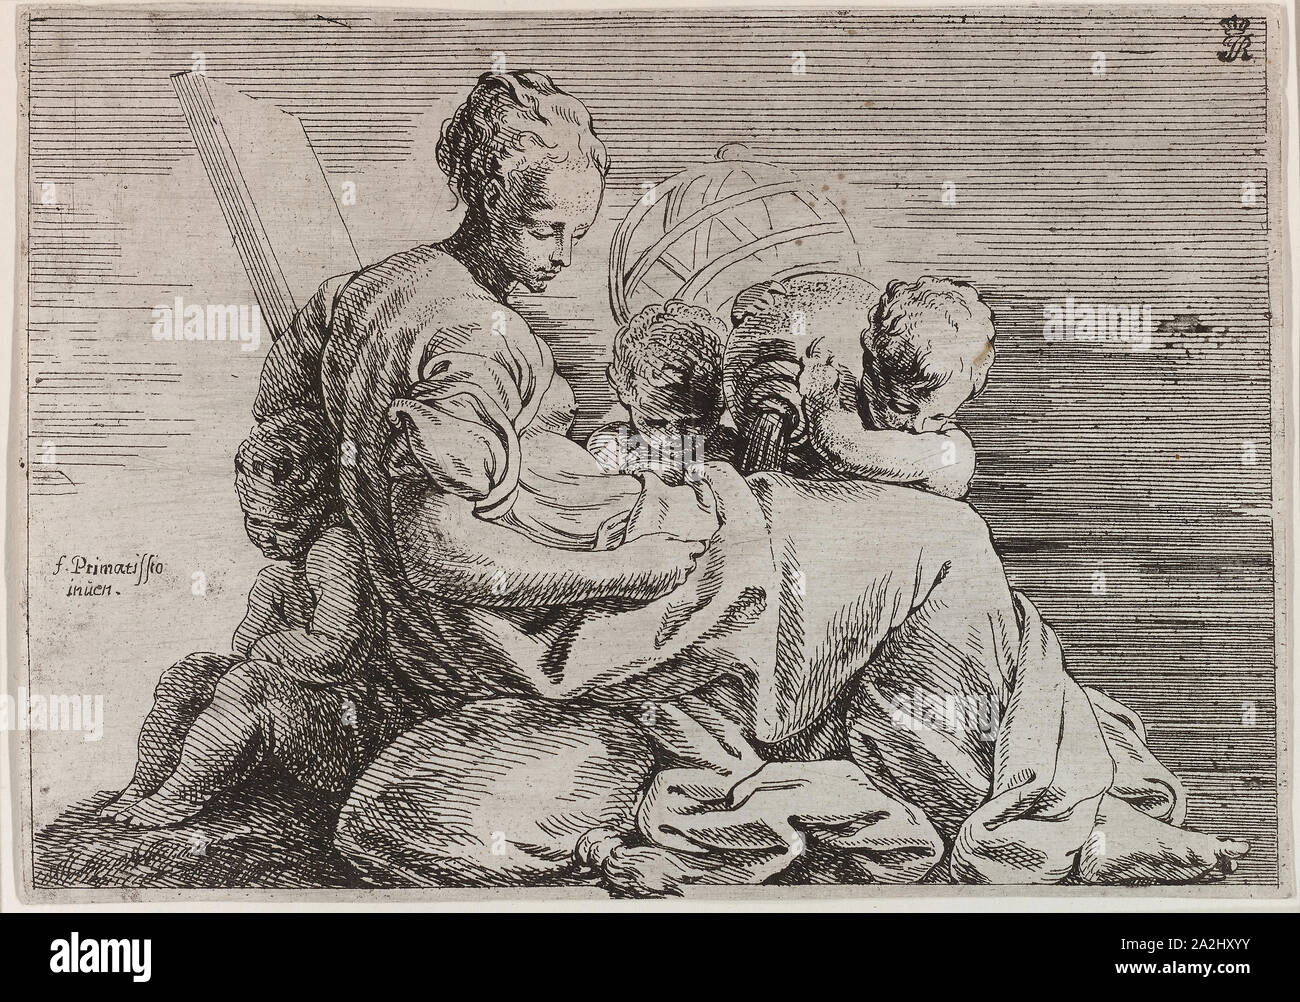 Astronomia, n.d., Eloi Bonnejonne (Italiano, c. 1630-1695), dopo Francesco Primaticcio (Italiano, 1504-1570), l'Italia, attacco stampato in nero su carta, 138 x 198 mm Foto Stock